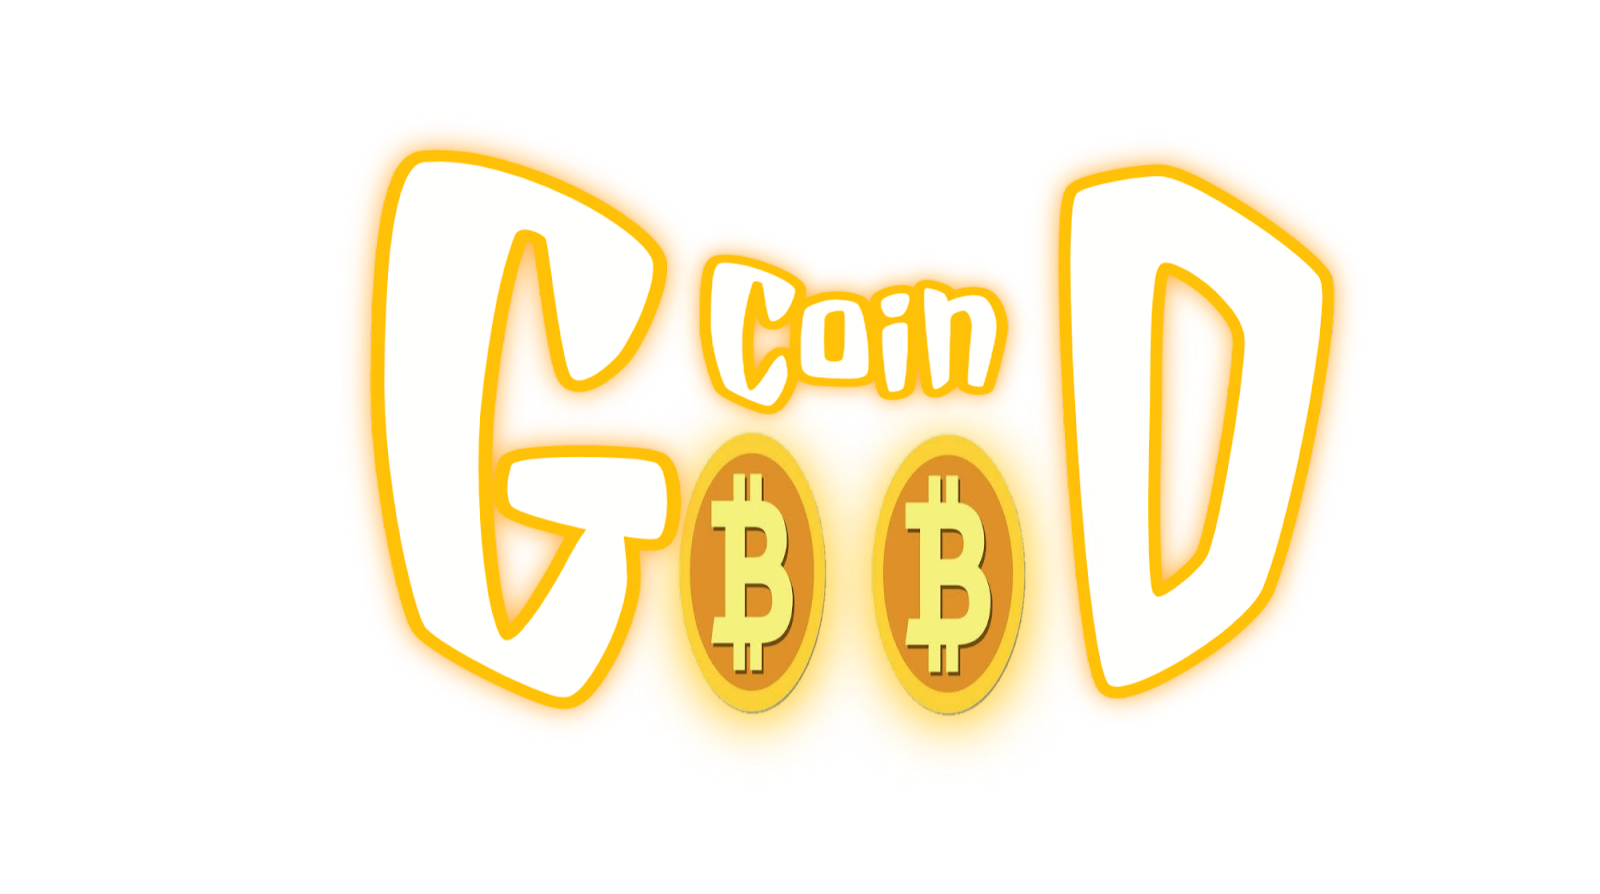 Good coin